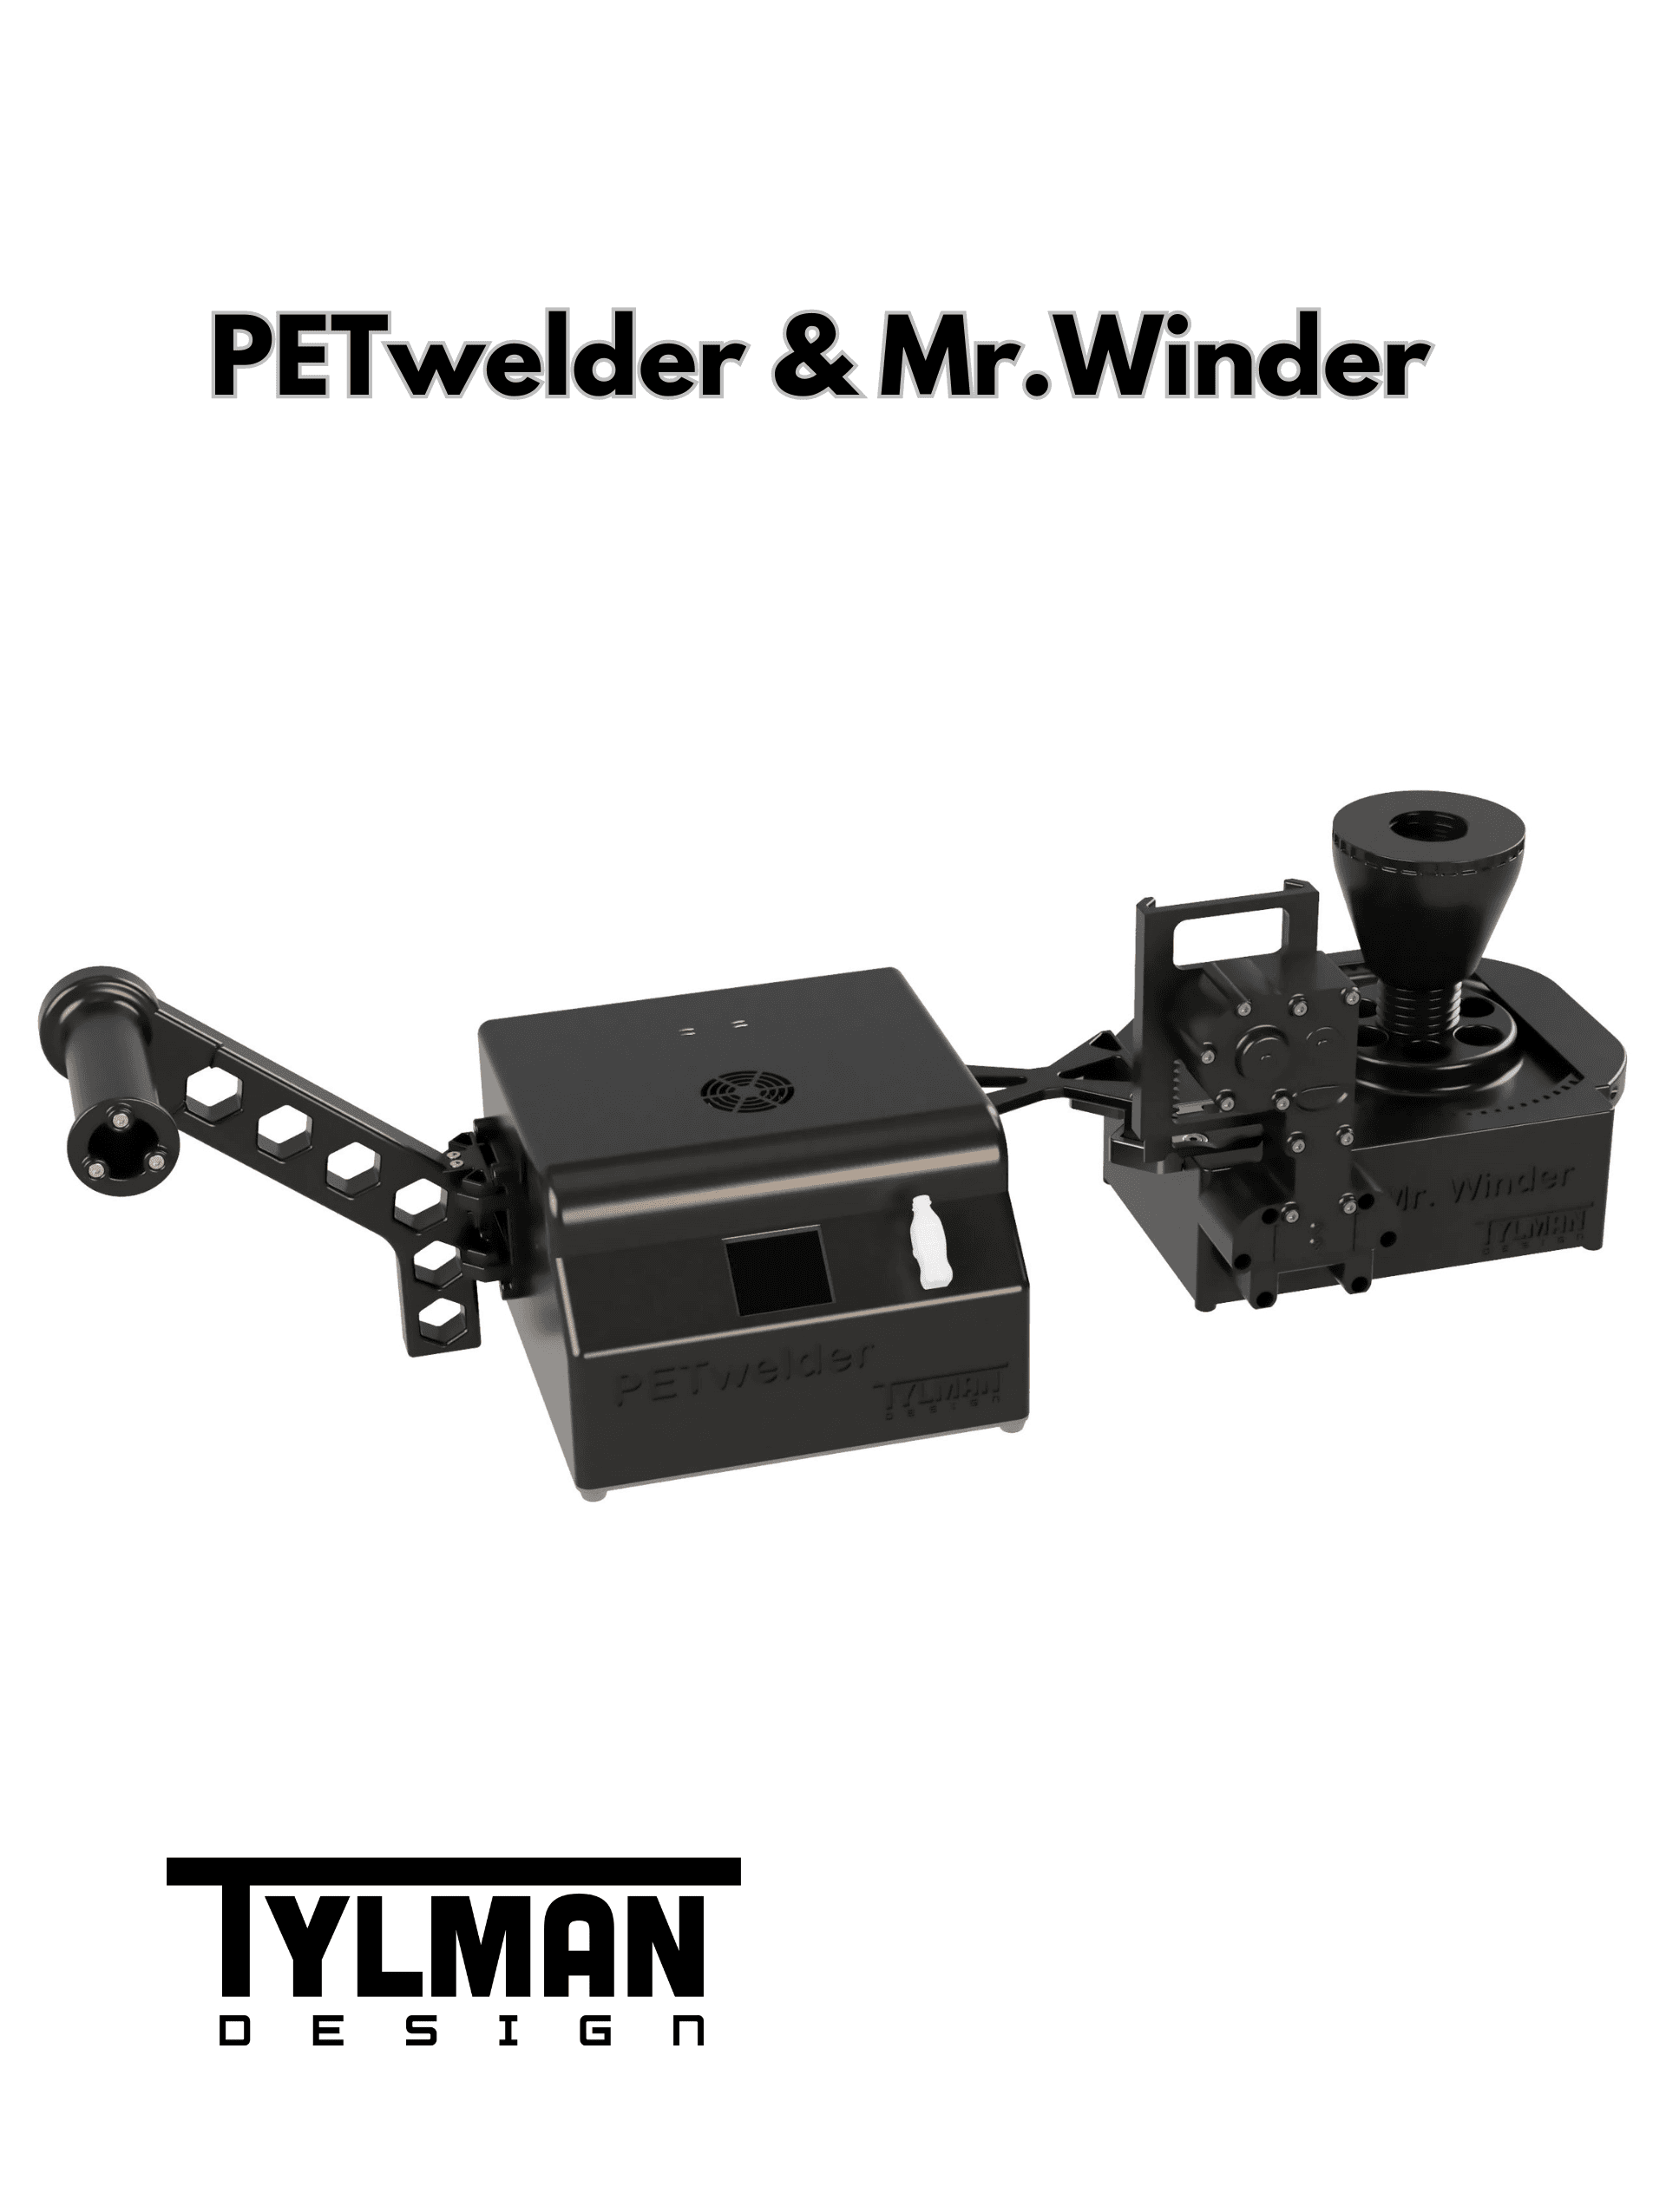 PETwelder & Mr.Winder.stl 3d model